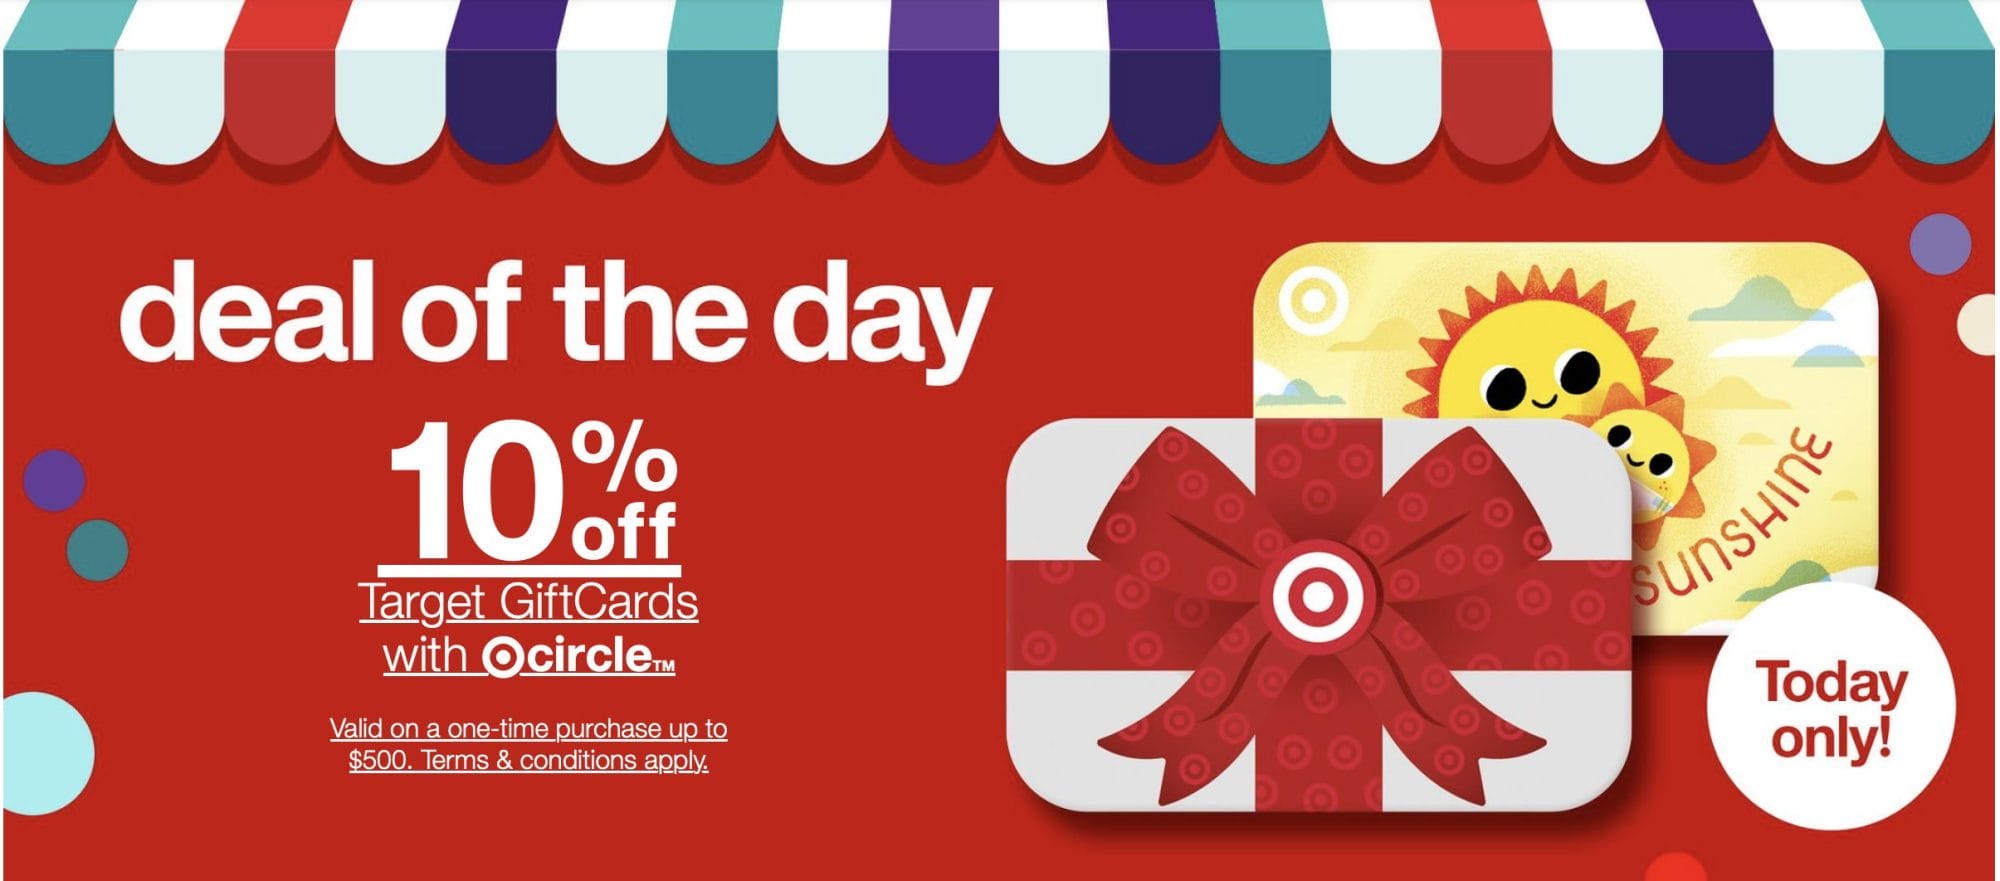 Target gift card coupon savings discount 10% sale